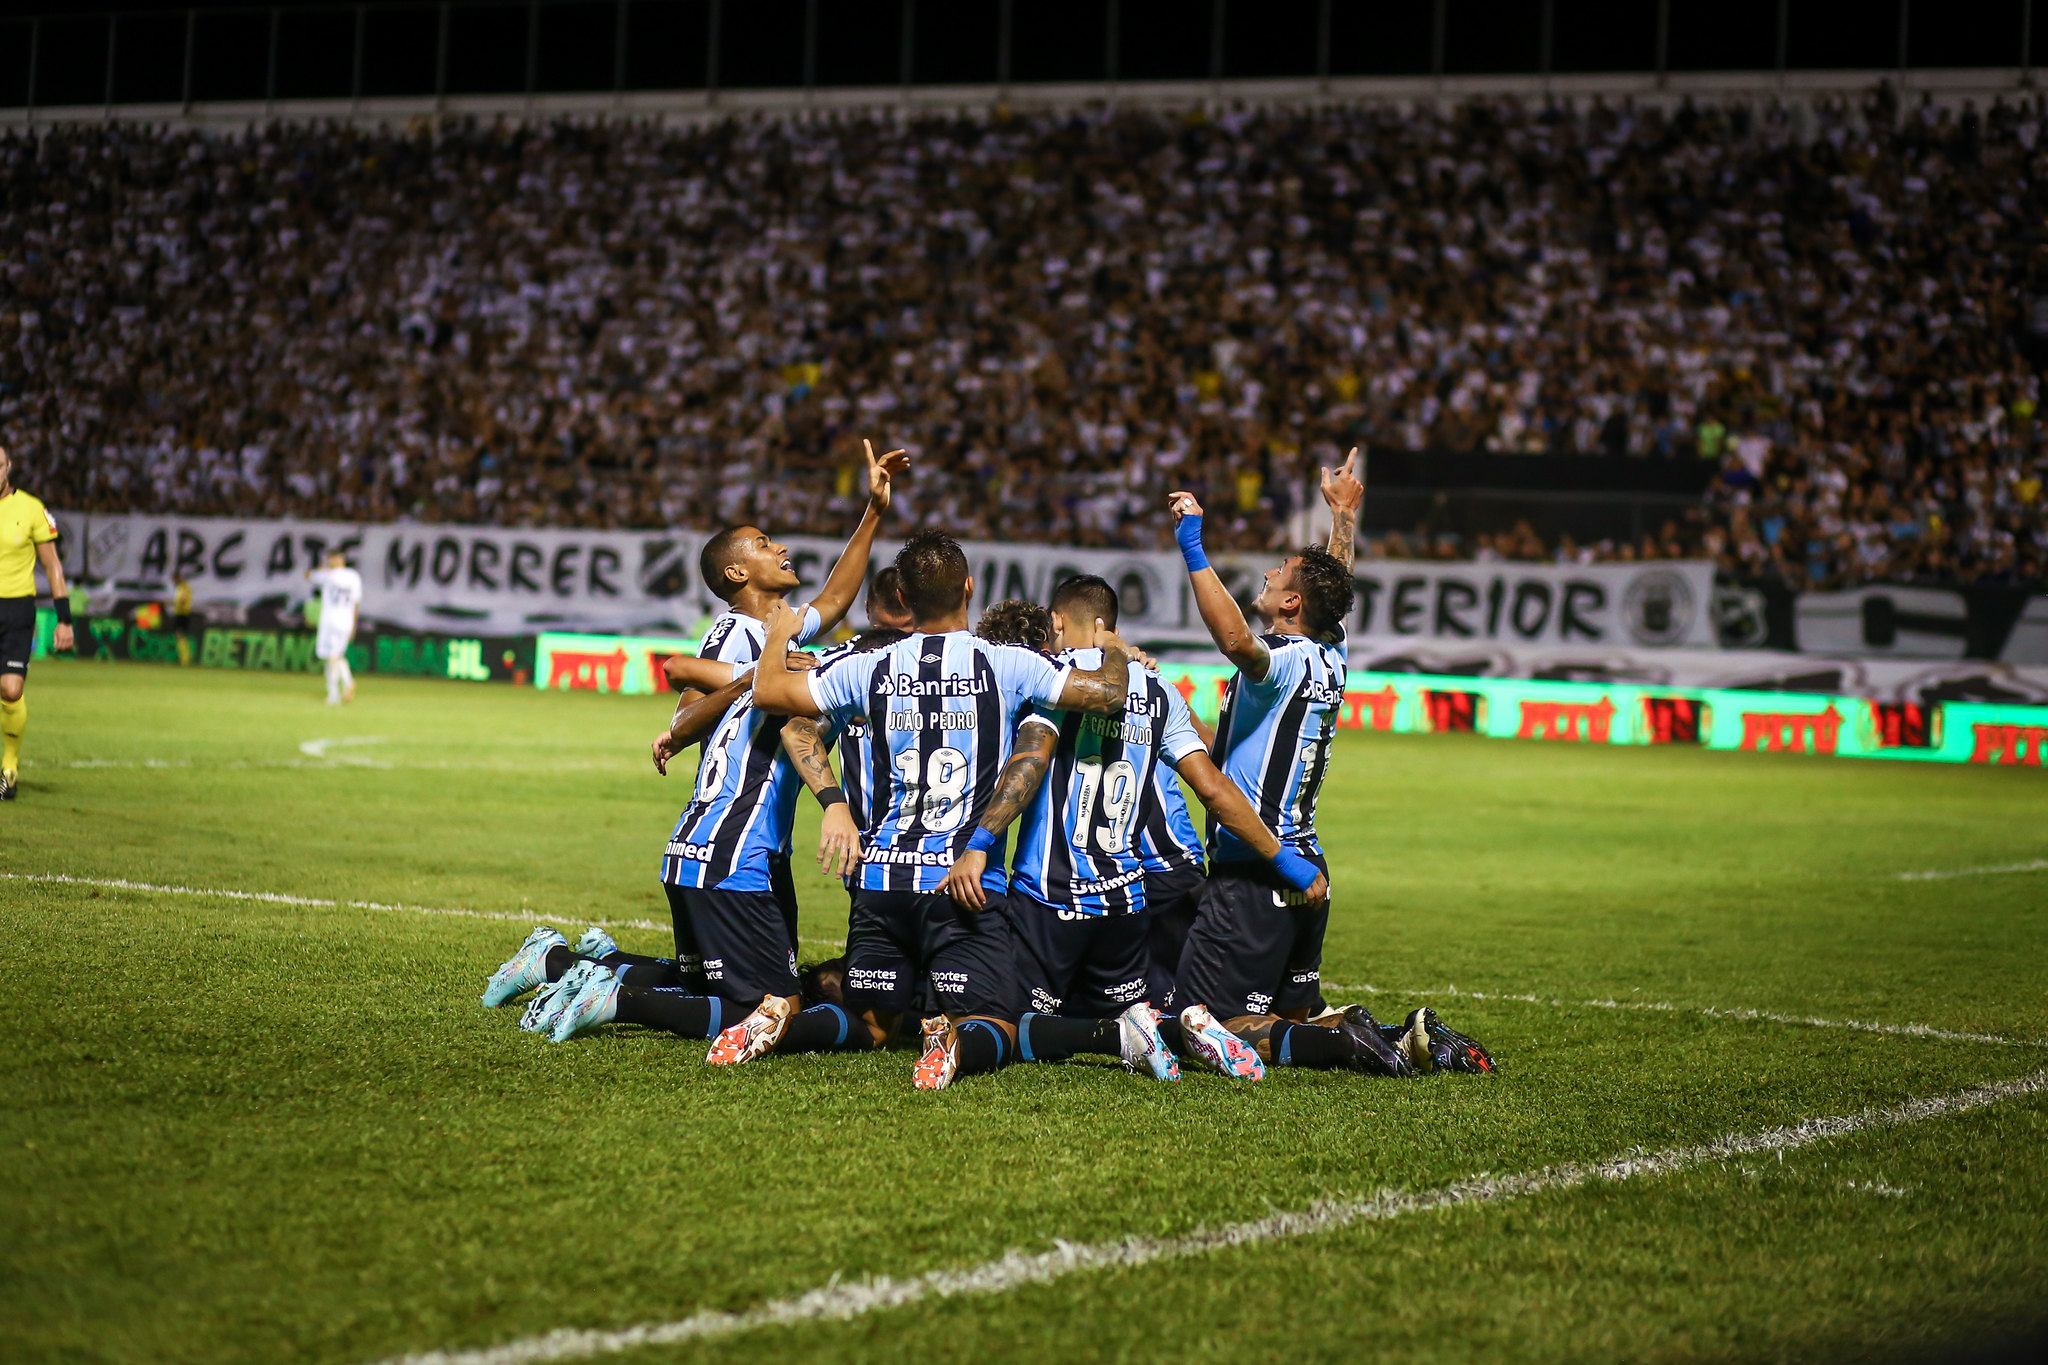 Grêmio vs. Opponent: A Clash of Titans